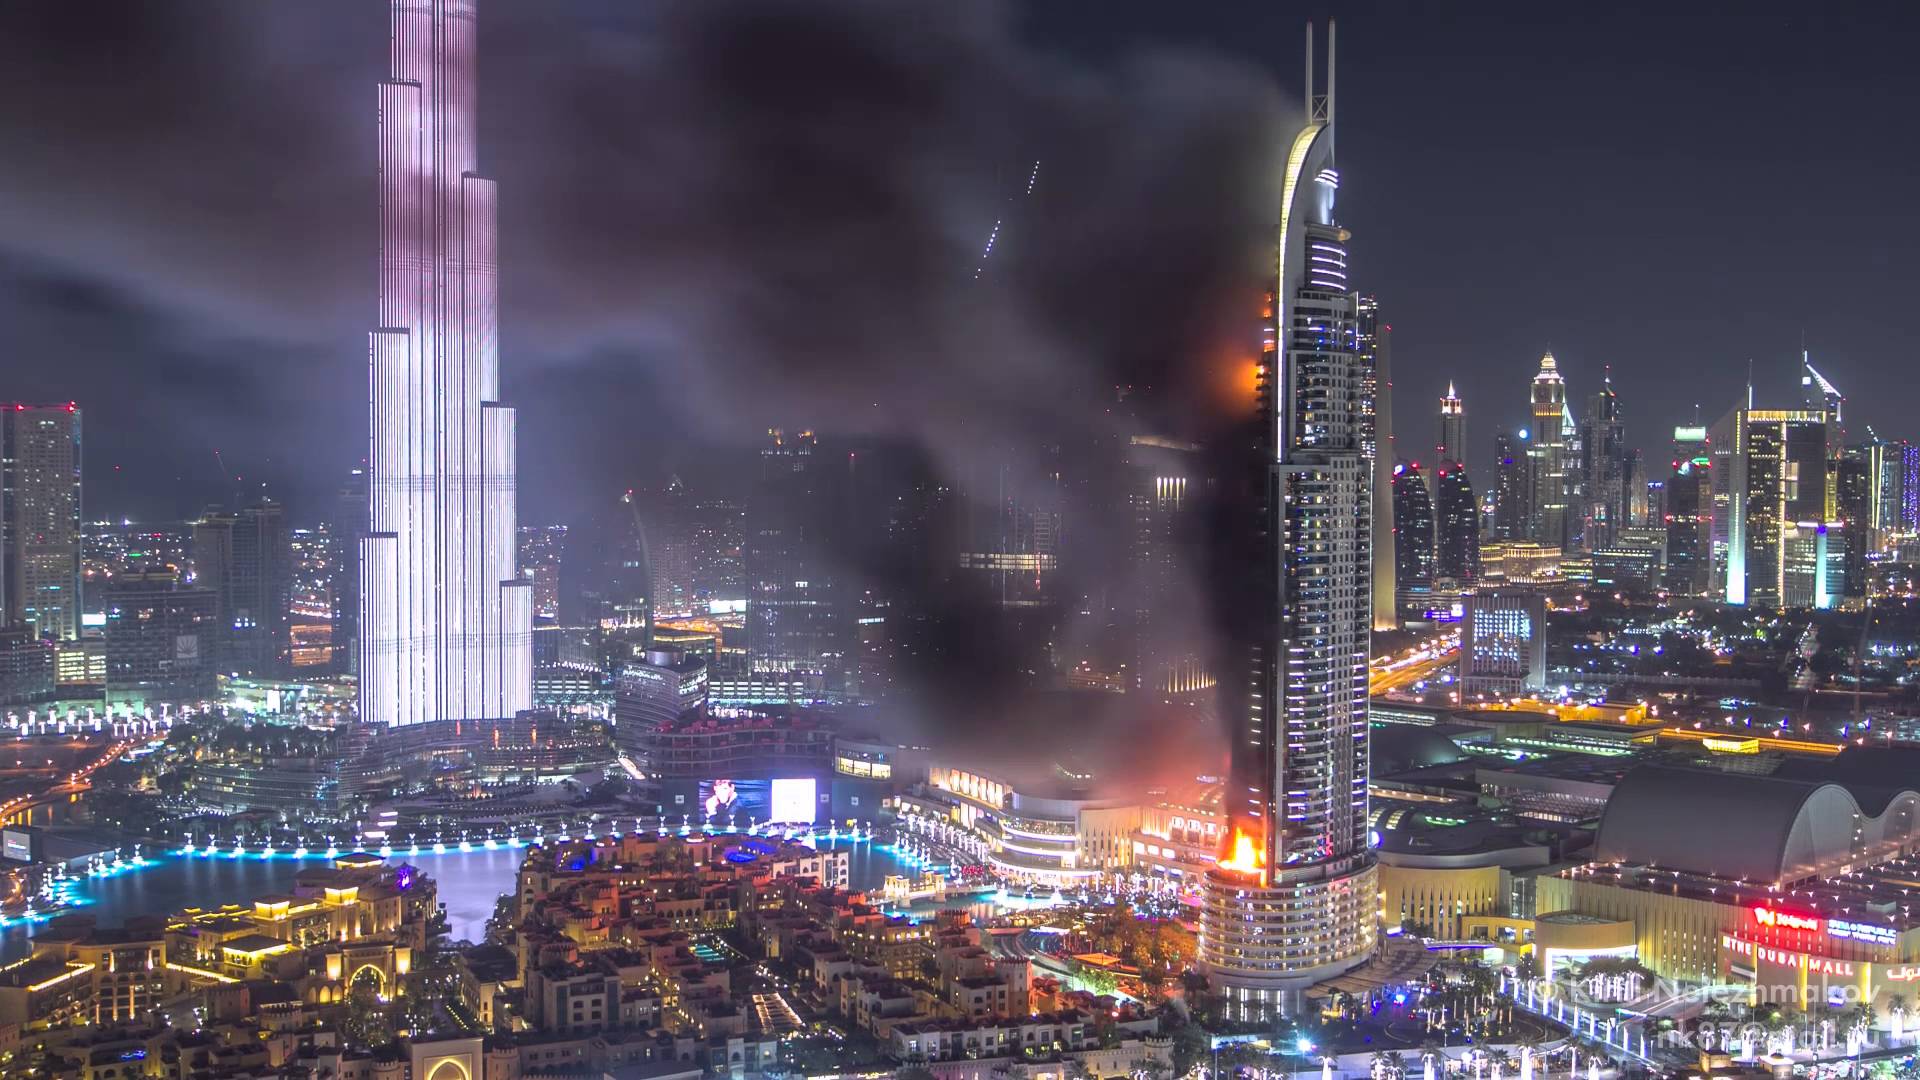 مصور يحول مشهد احتراق فندق دبي إلى قطعة فنية بديعة ” فيديو “